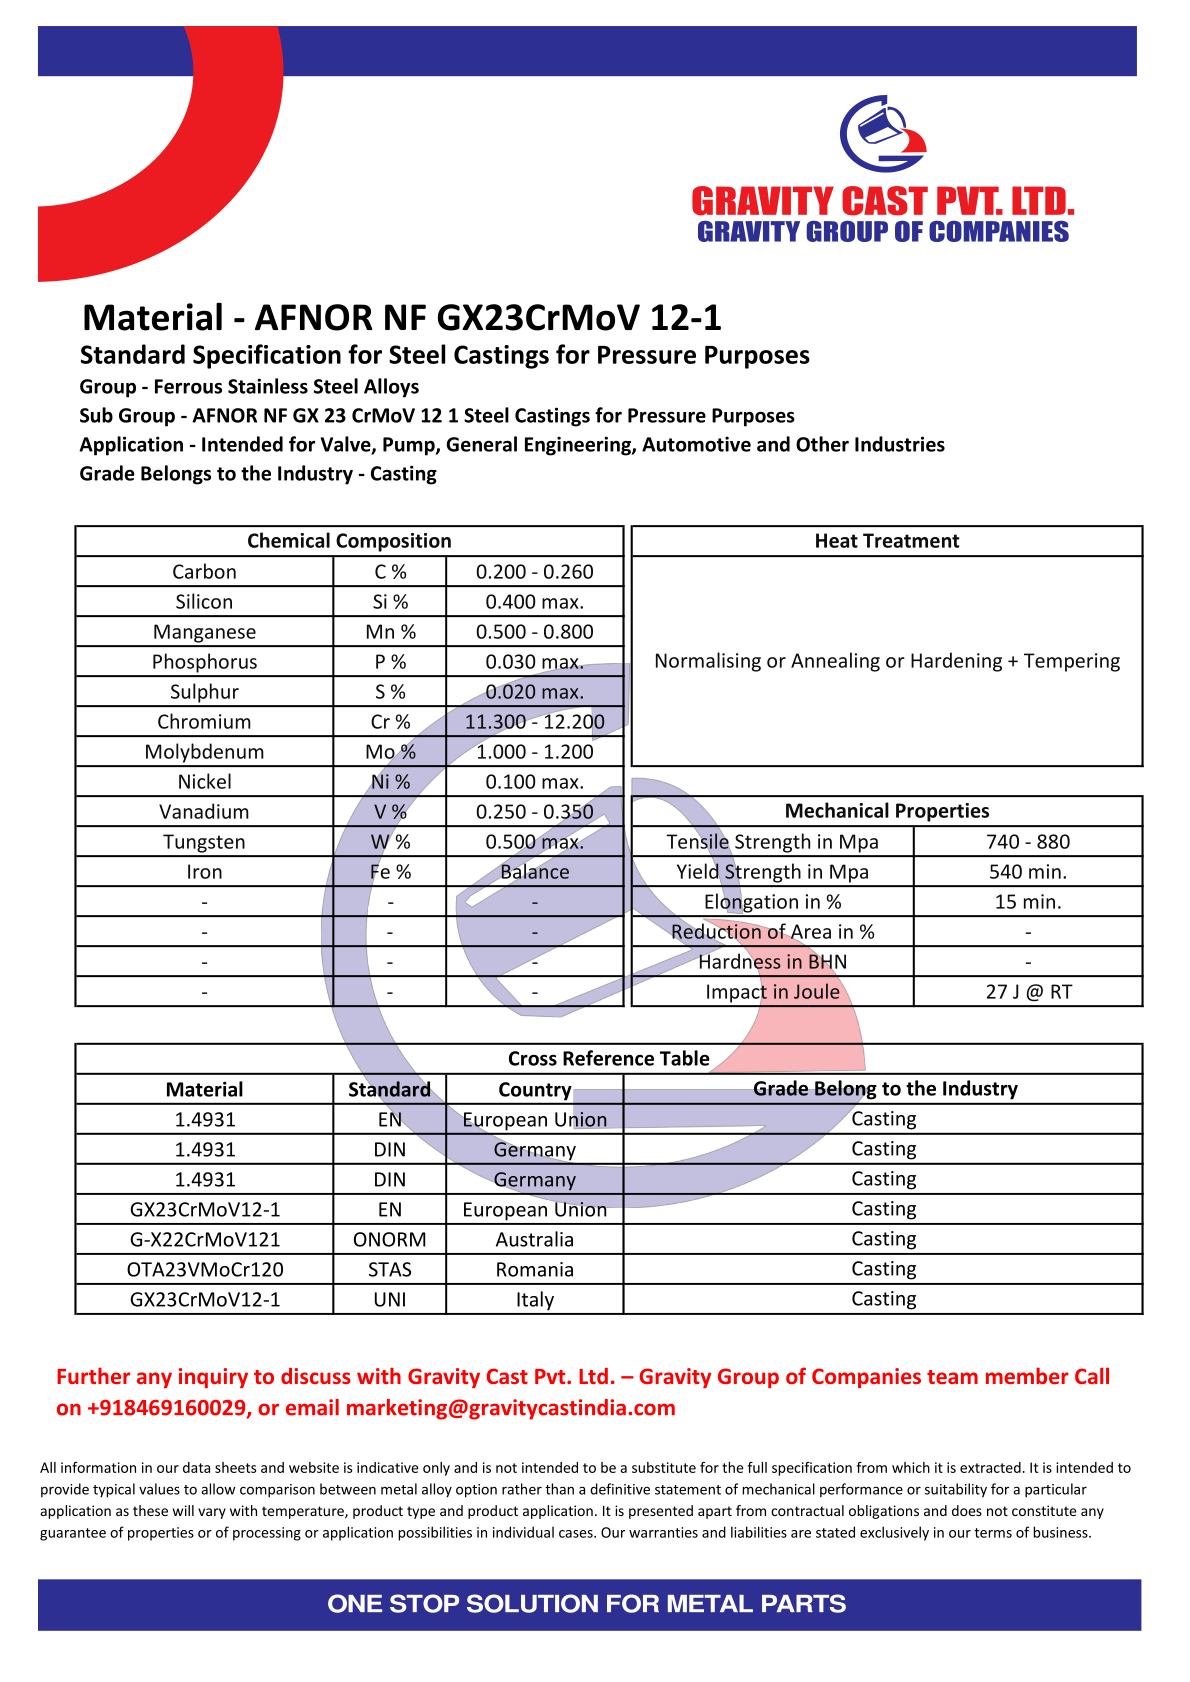 AFNOR NF GX23CrMoV 12-1.pdf